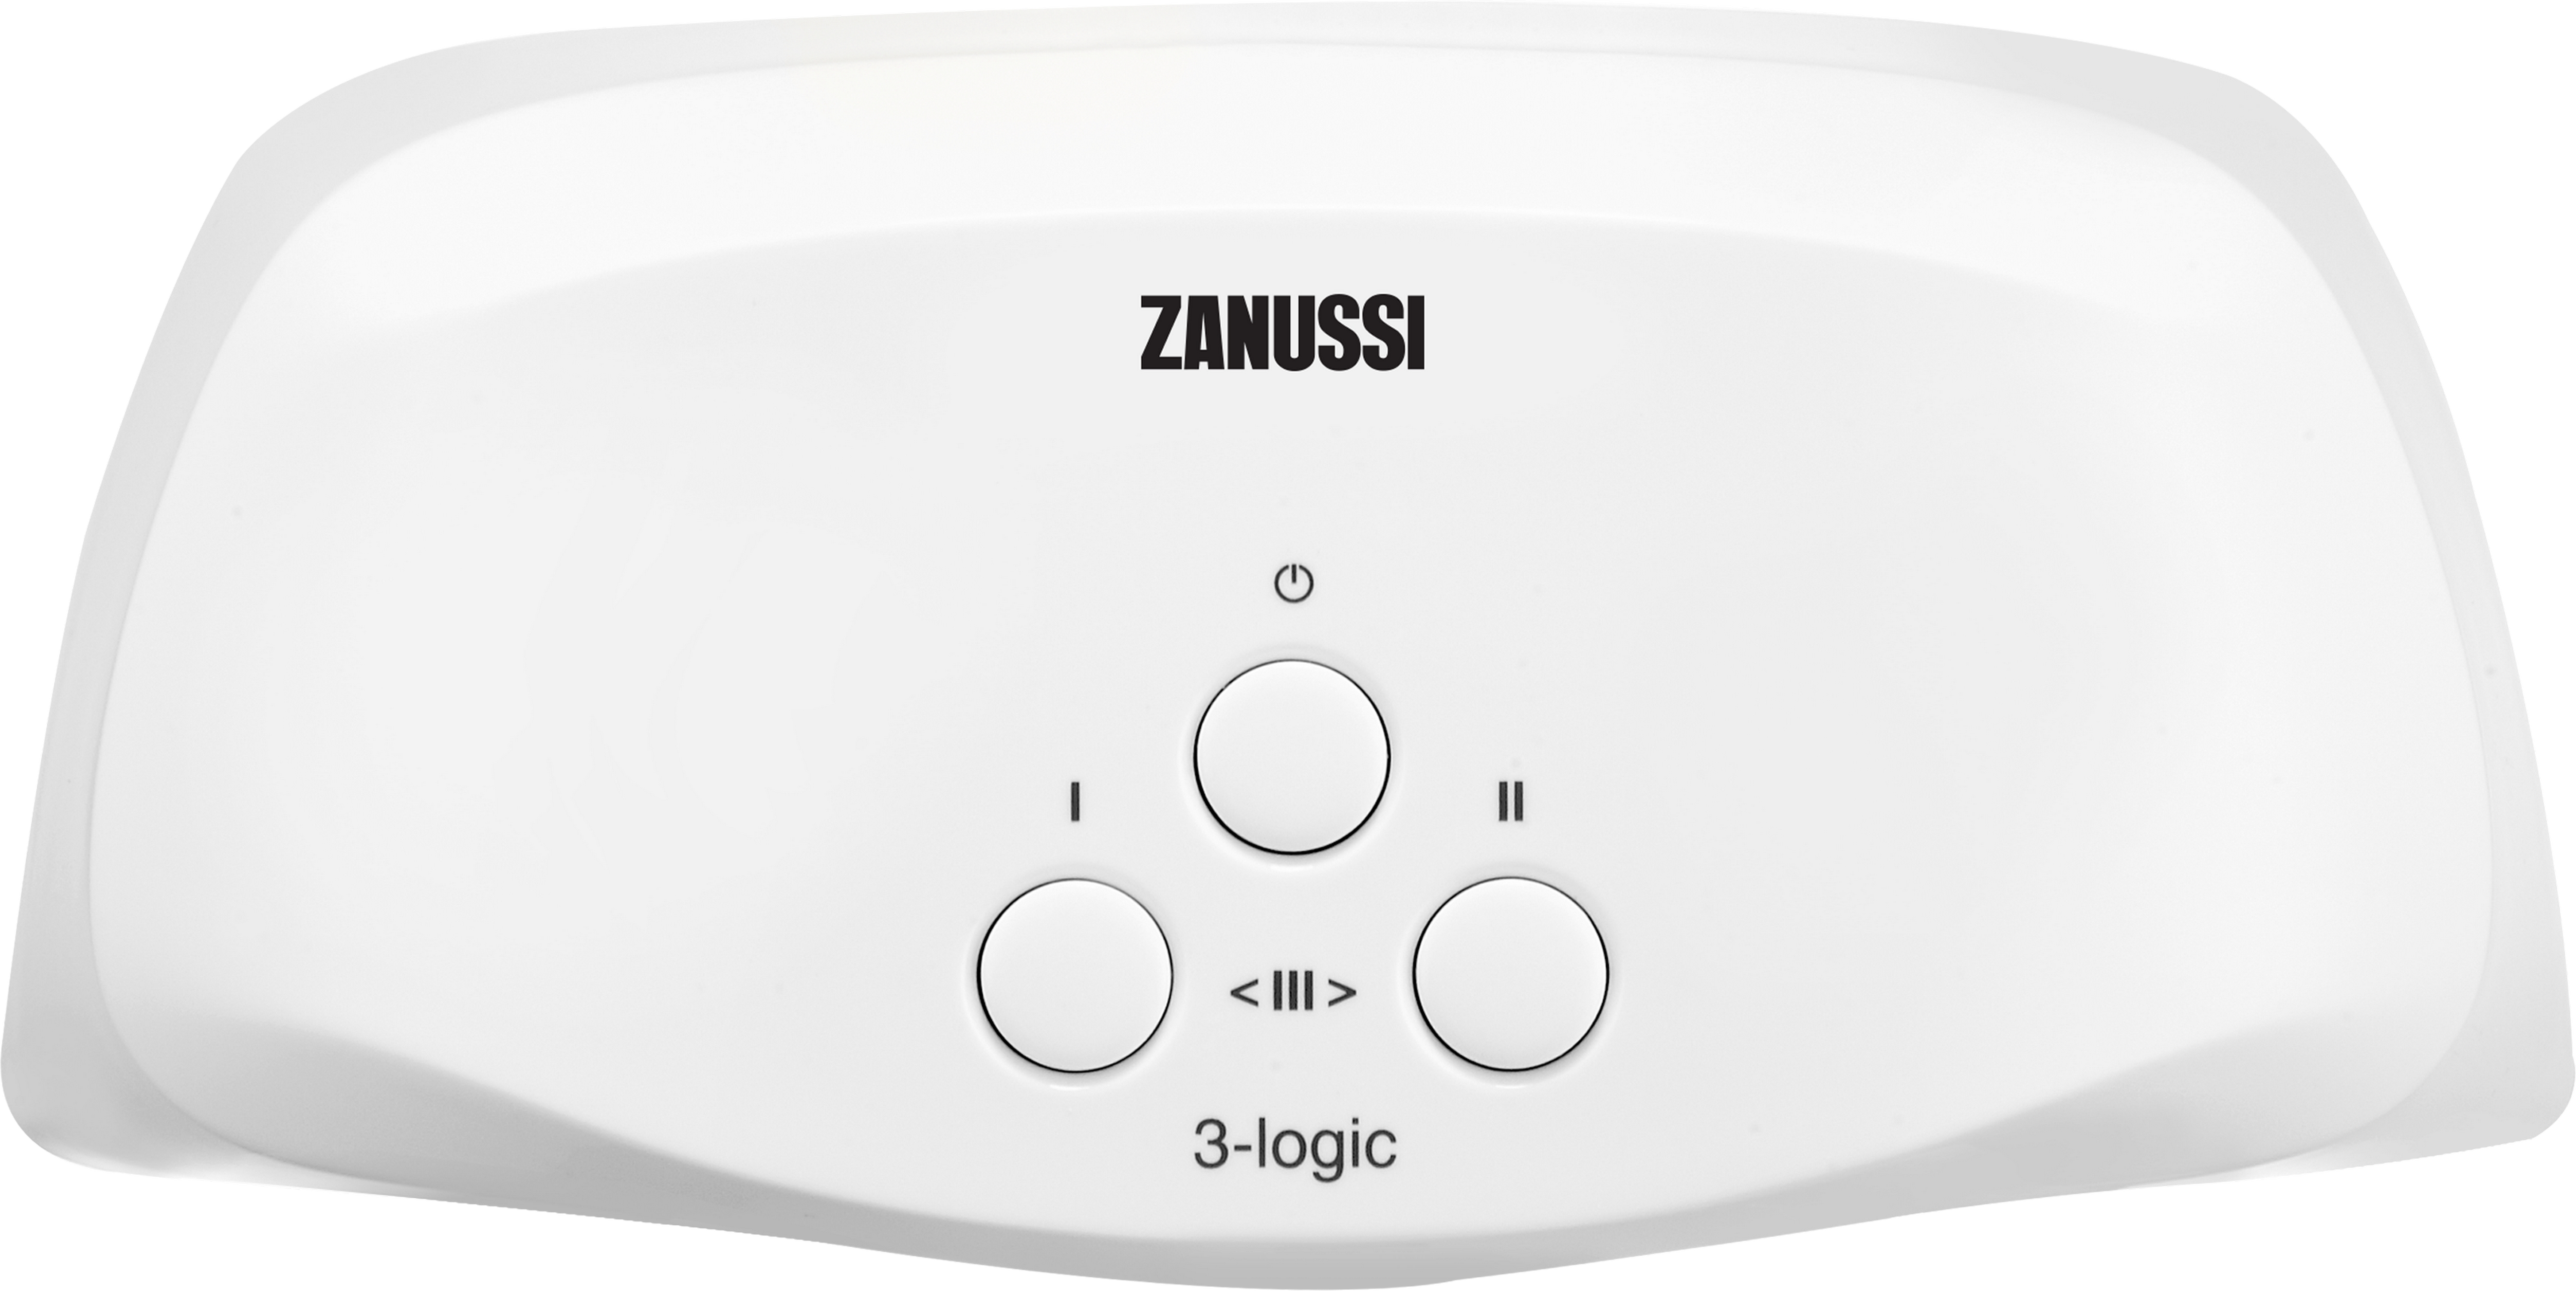 Проточный водонагреватель Zanussi 3-logic TS (6,5 кВт) в интернет-магазине, главное фото